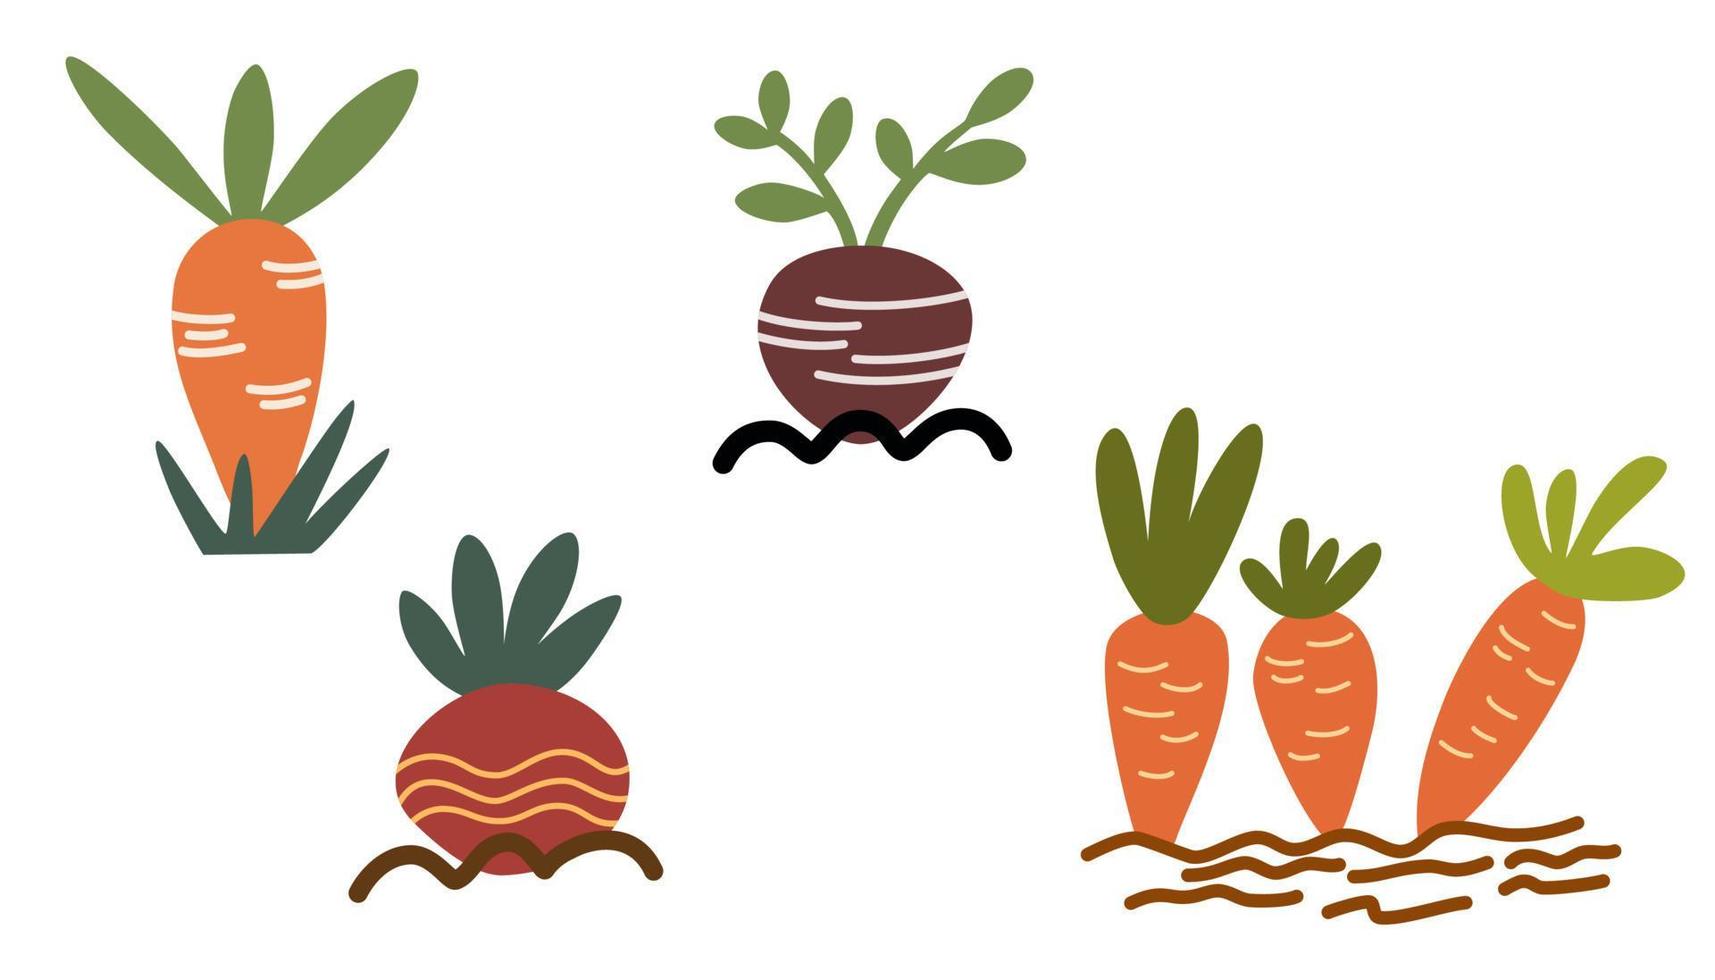 plantor i de jord. morötter, rädisor, betor växa i de jord. skörd, lantbruk, odla. vektor hand dra illustration isolerat på de vit bakgrund.